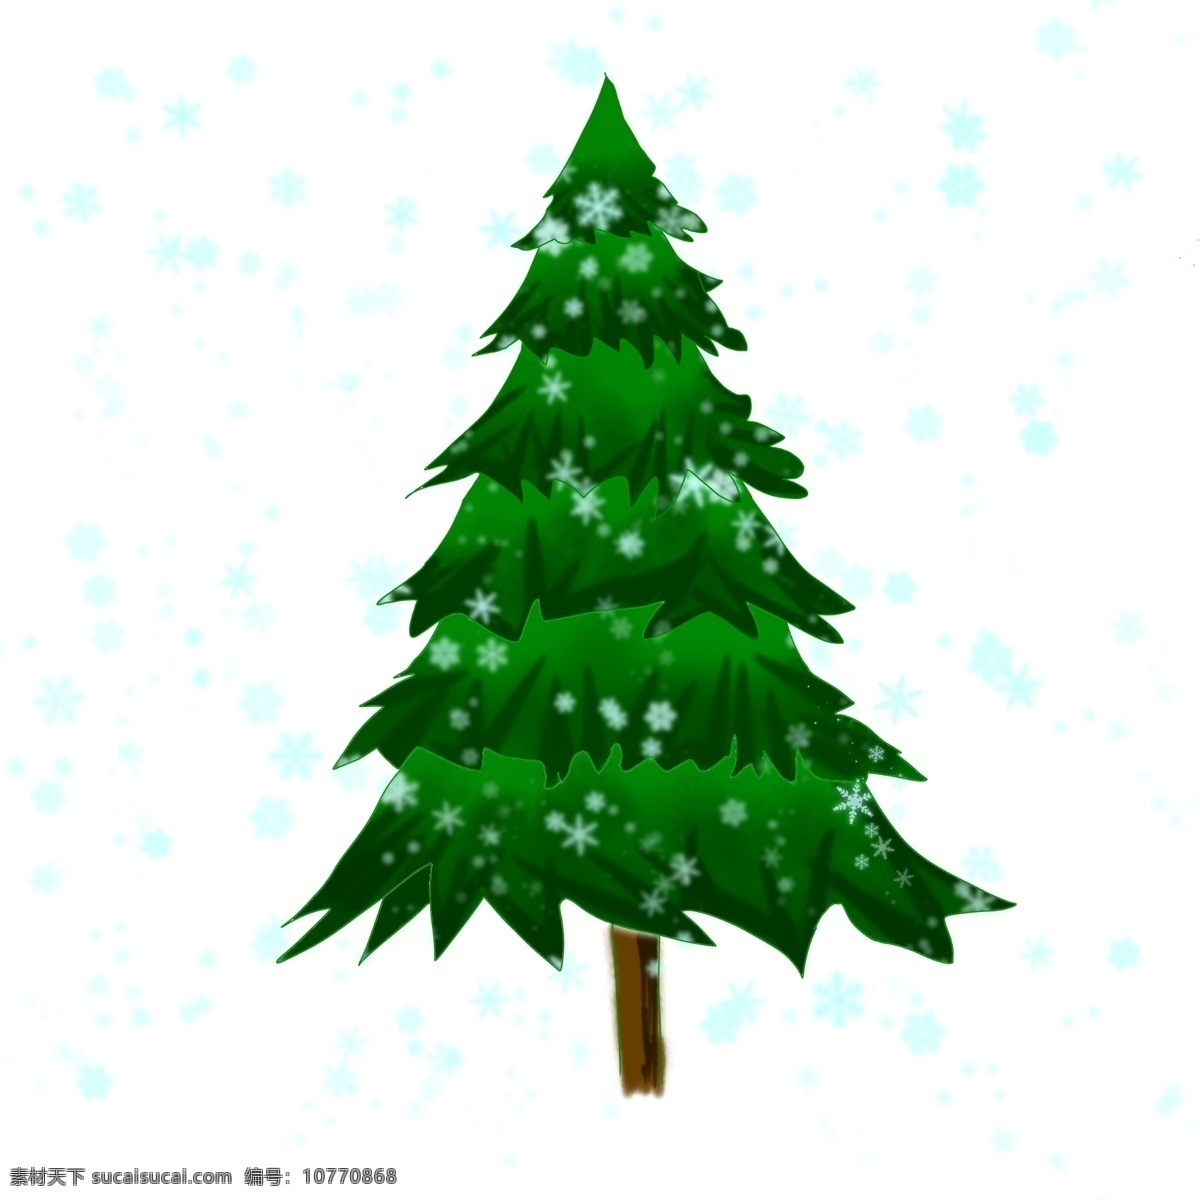 原创 圣诞节 平安 树 圣诞树 雪花 元素 平安树